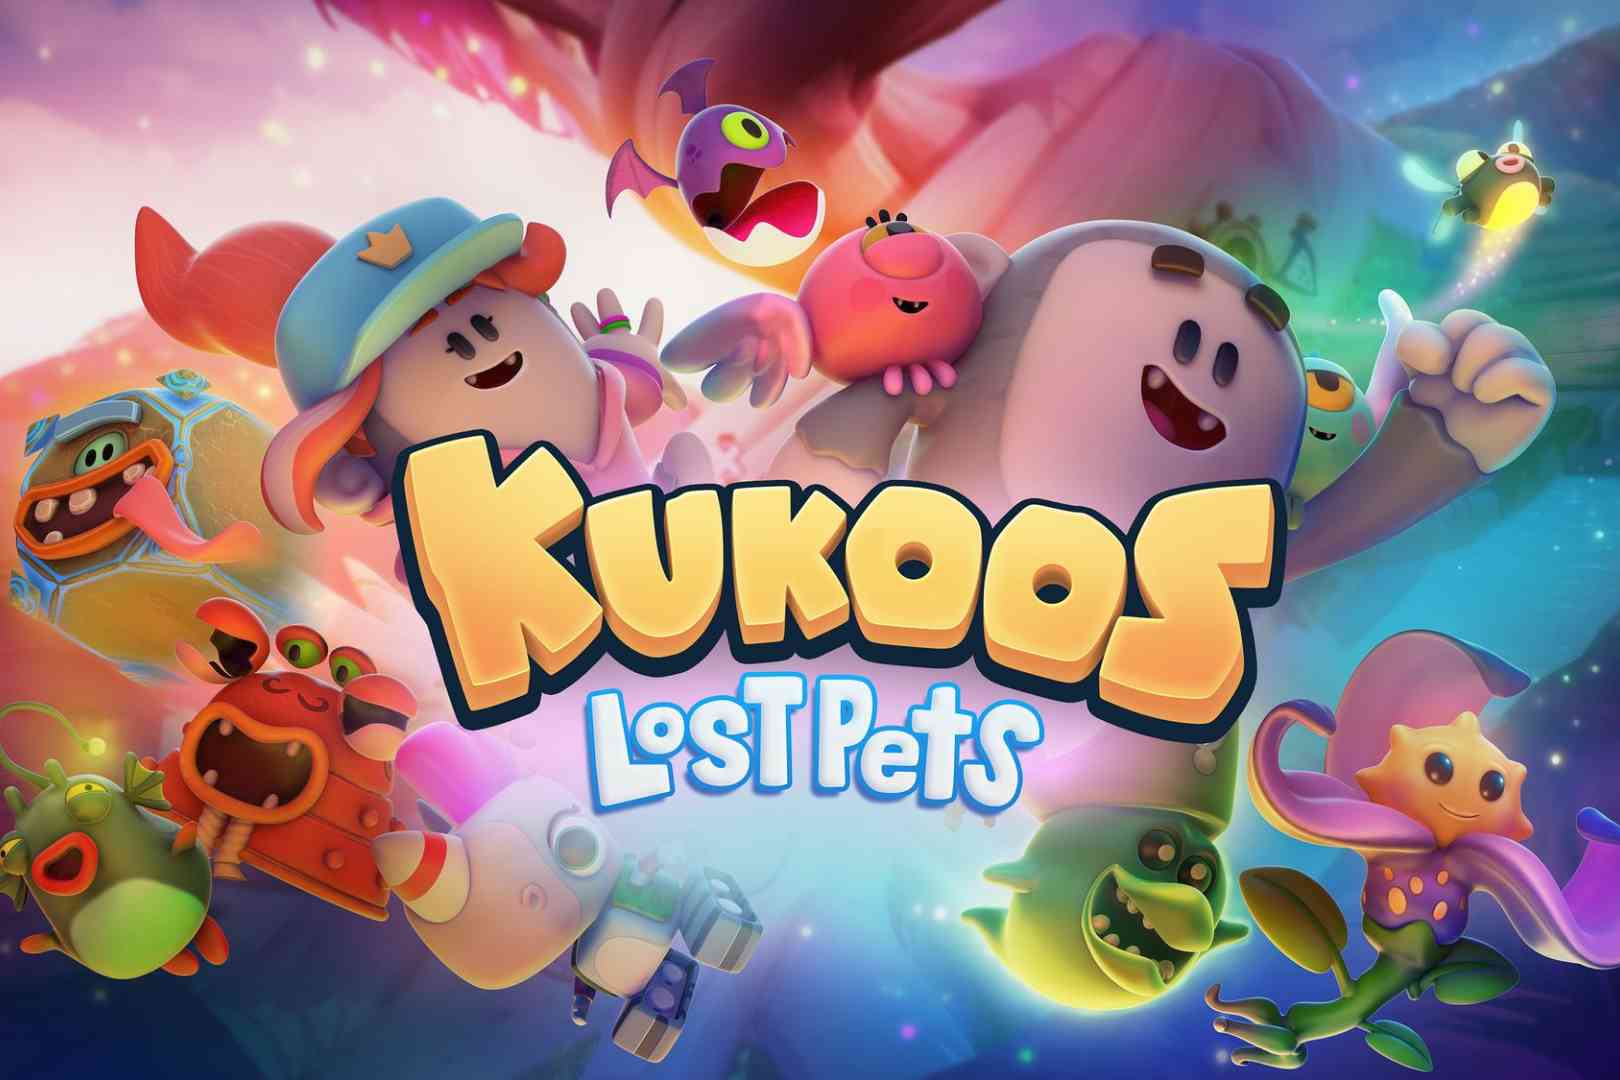 Kukoos - Lost Pets